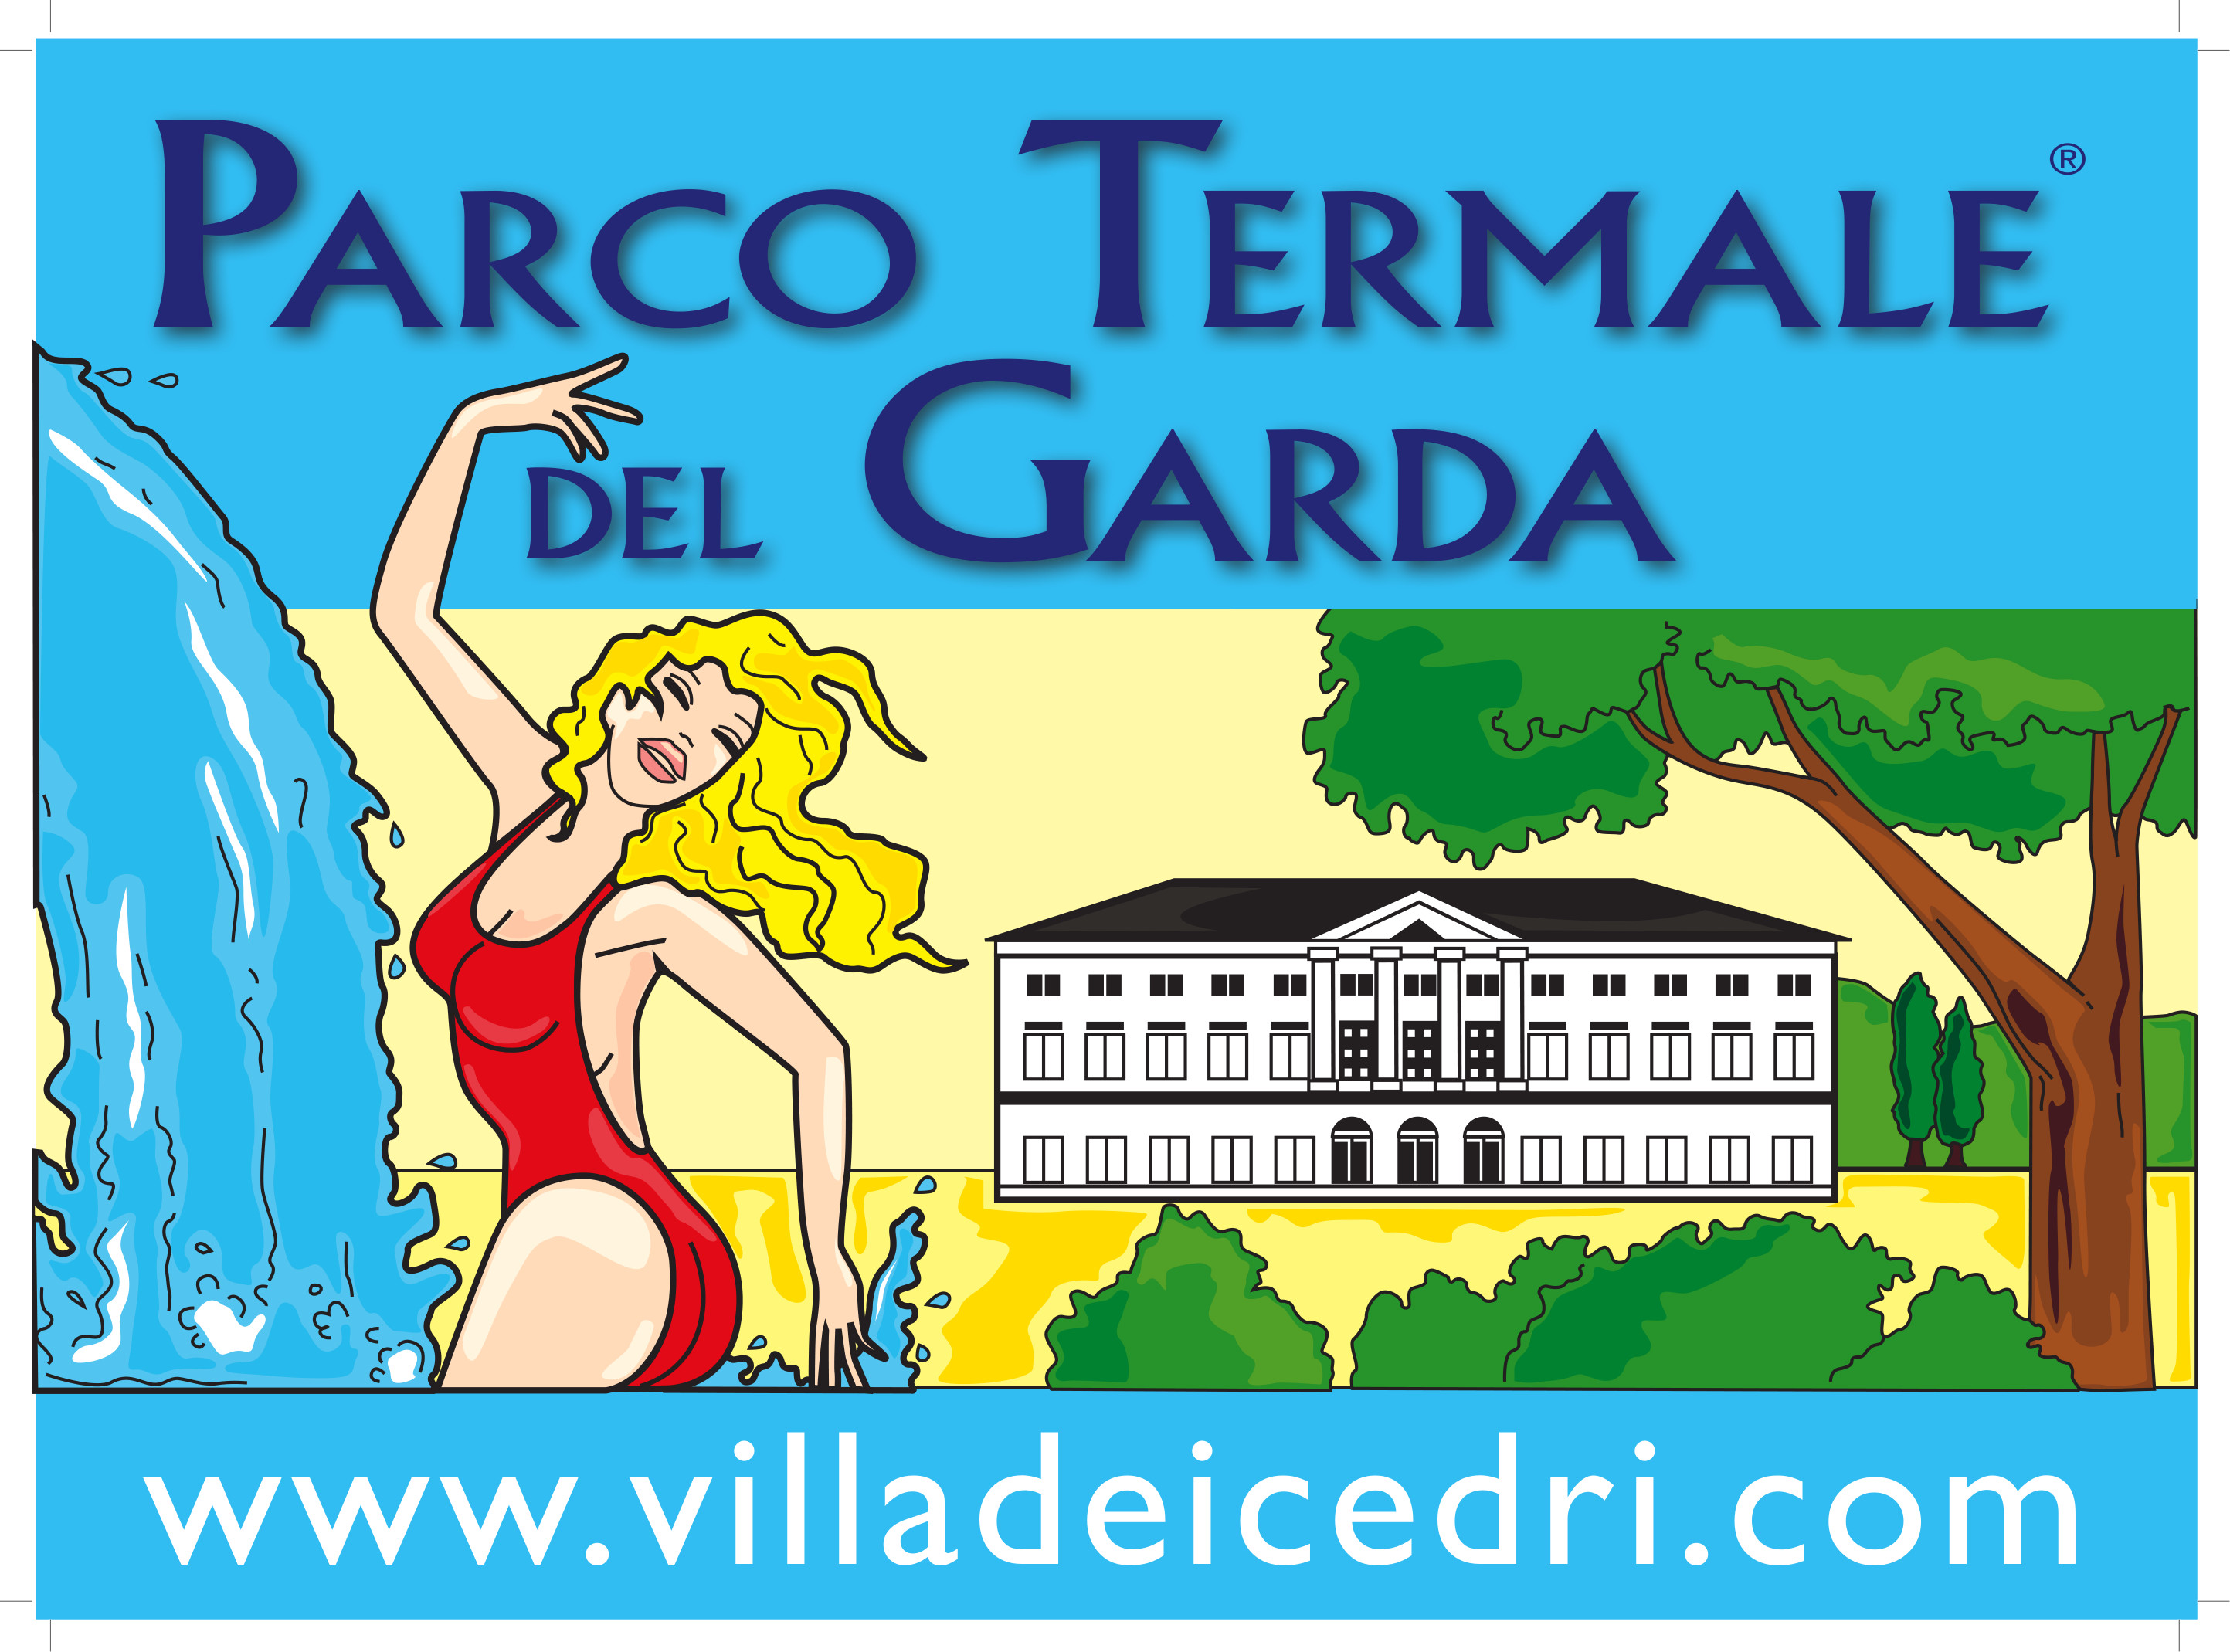 Parco Termale del Garda - Villa dei Cedri